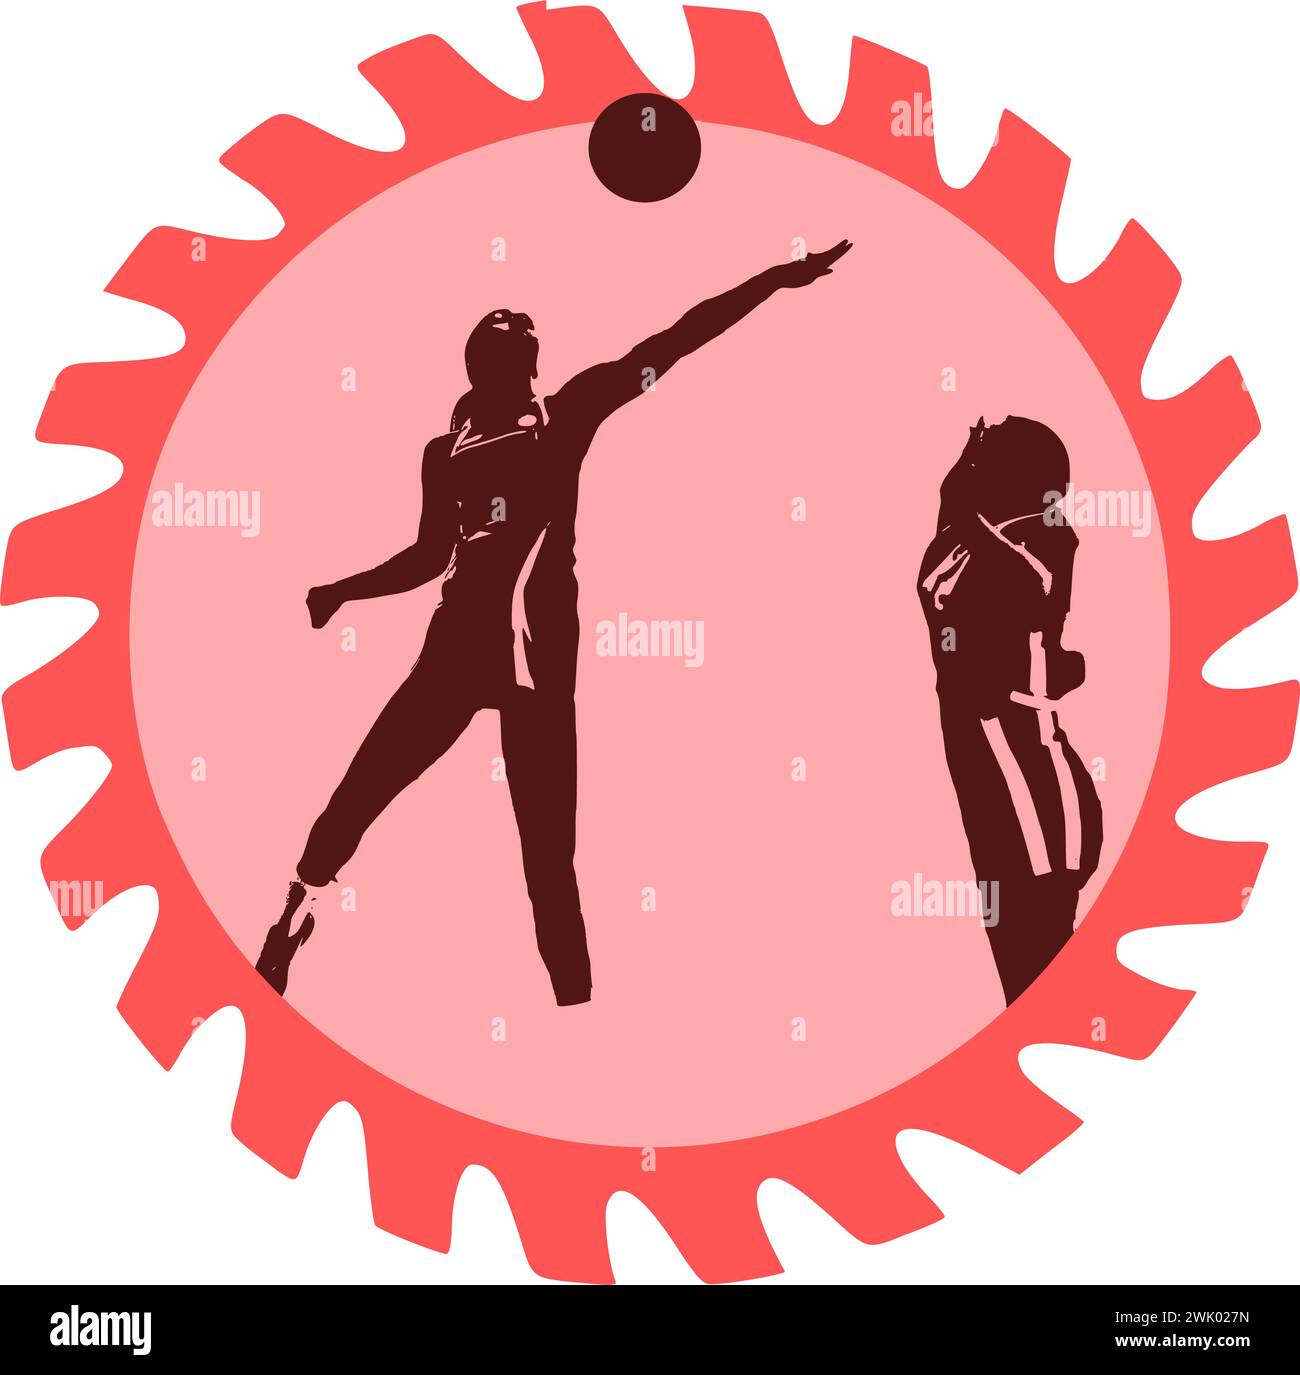 Entdecken Sie fesselnde Vektorbilder, die das Wesen von Netball einfangen, einer dynamischen Sportart, die hauptsächlich von Frauen gespielt wird. Diese Abbildungen zeigen das A Stock Vektor